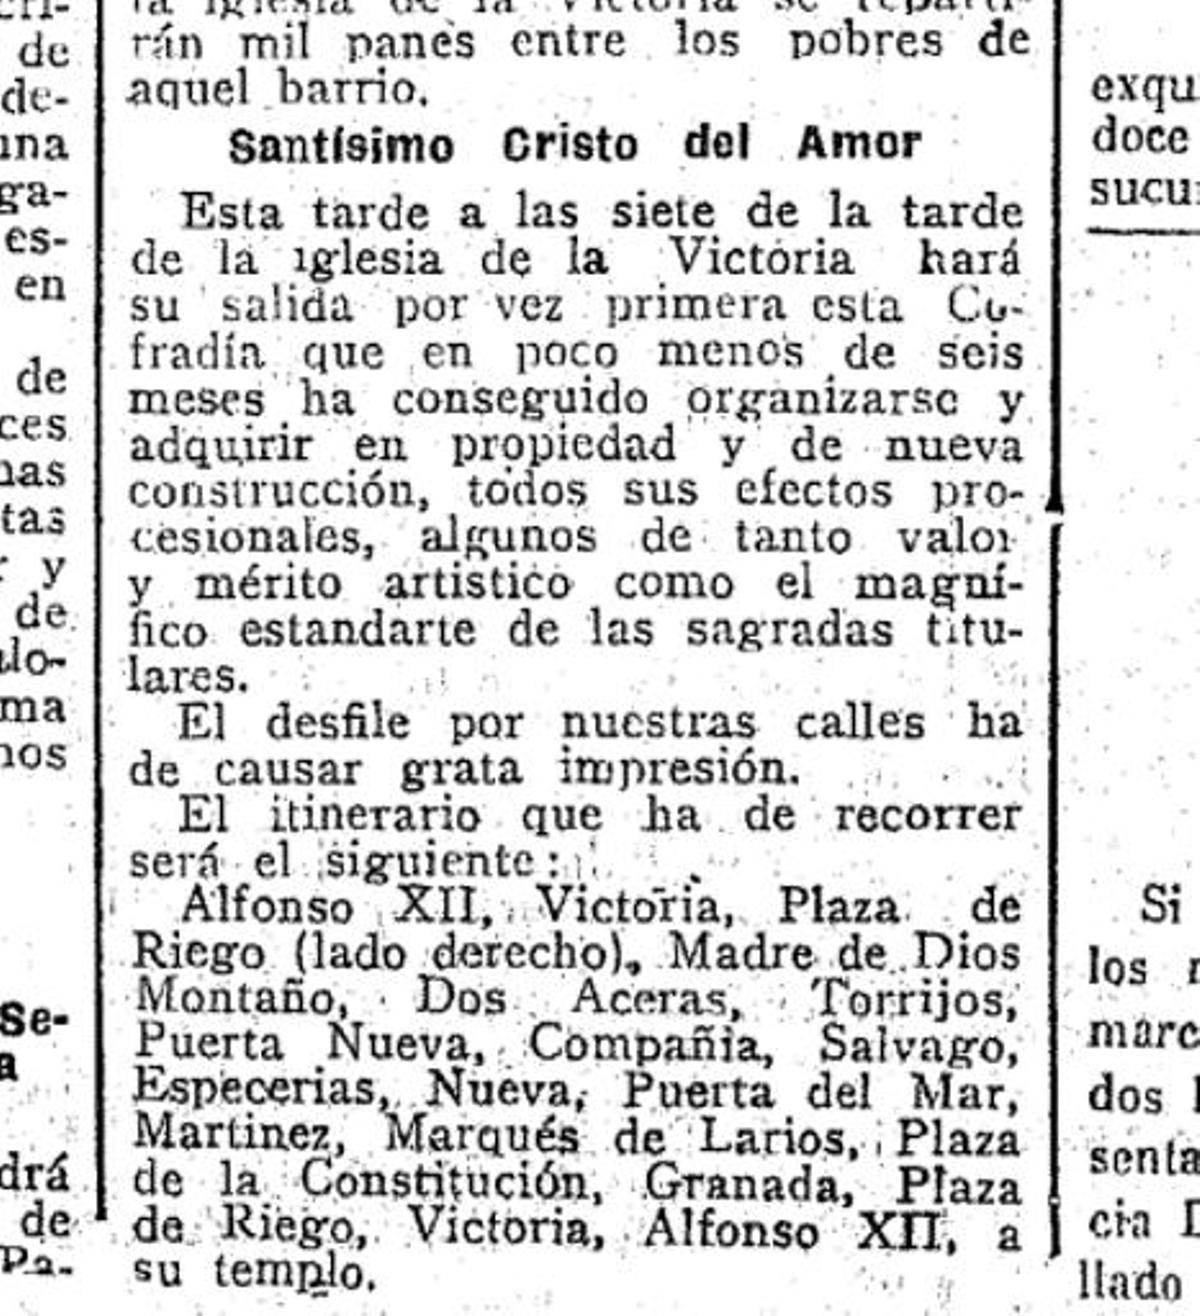 Recorrido realizado en la primera salida procesional del Cristo del Amor en abril de 1924